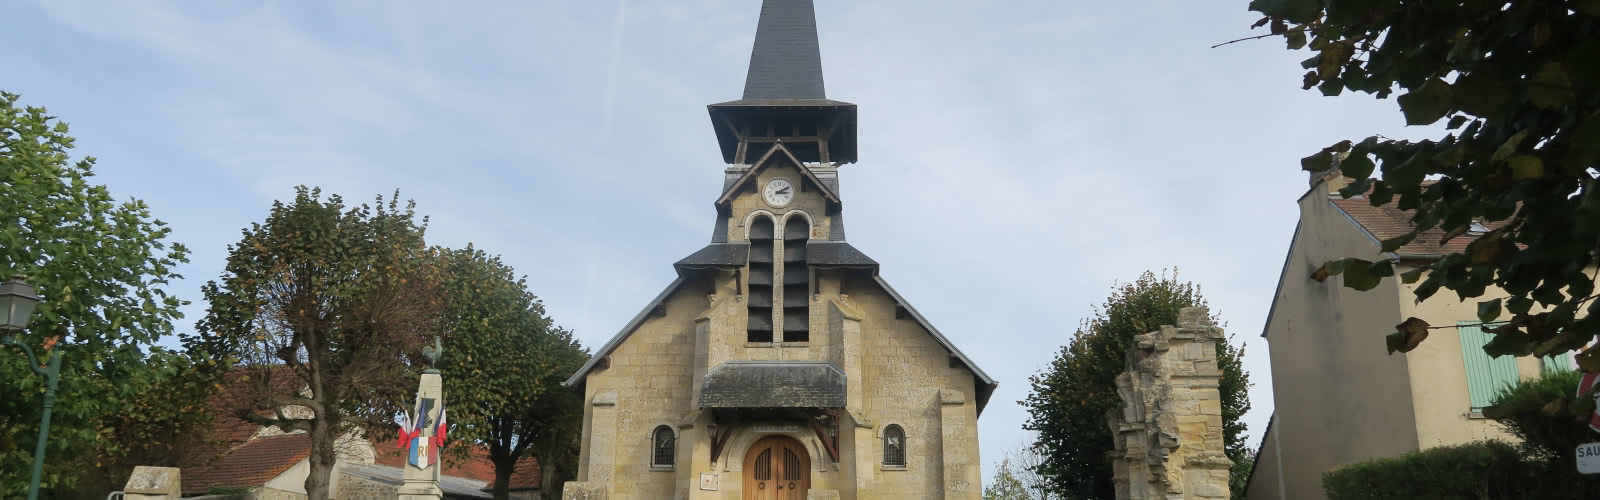 Eglise de Génicourt